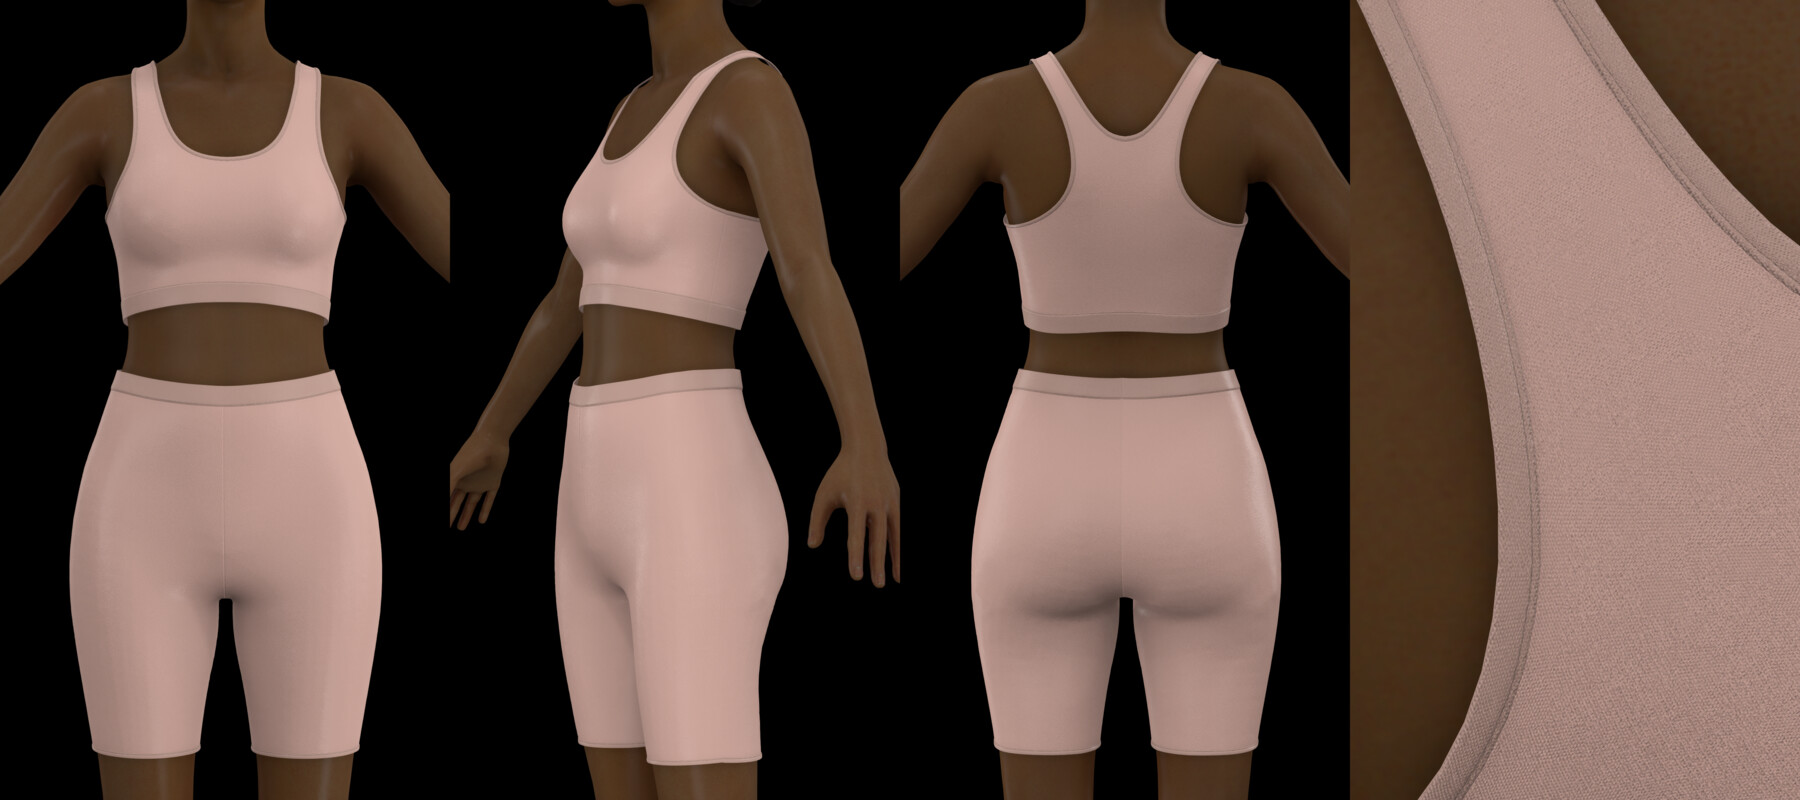 Womens underwear pack like skims MD CLO 3D zprj projects obj 3D model